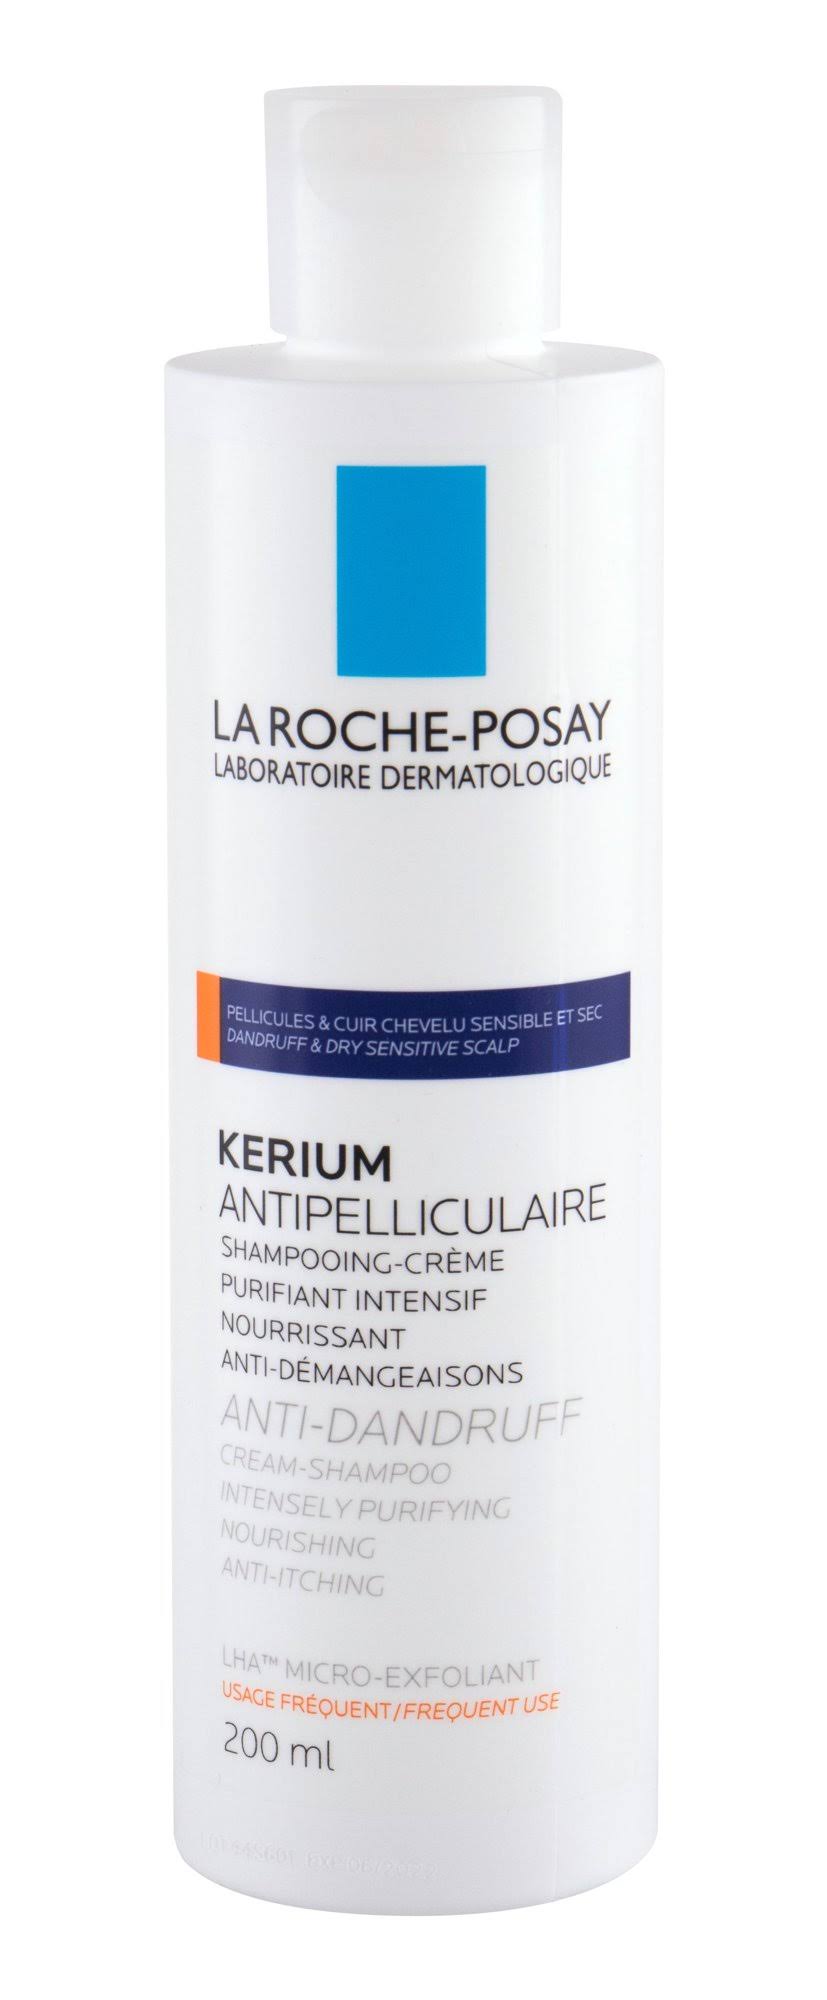 La Roche Posay Kerium Anti Dandruff Cream Shampoo - 200ml